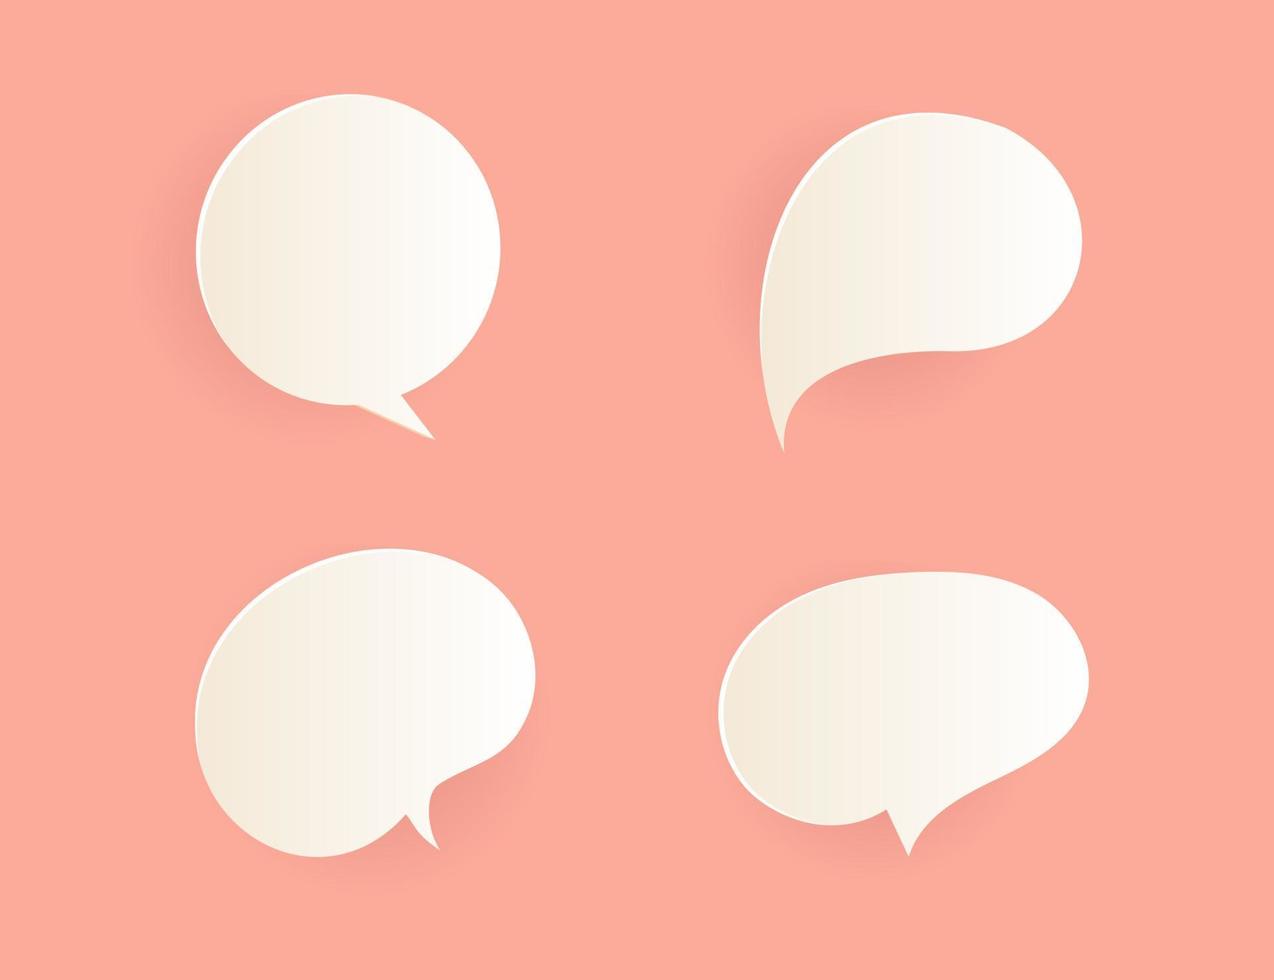 3D-spraak buble chat pictogram communicatie vector